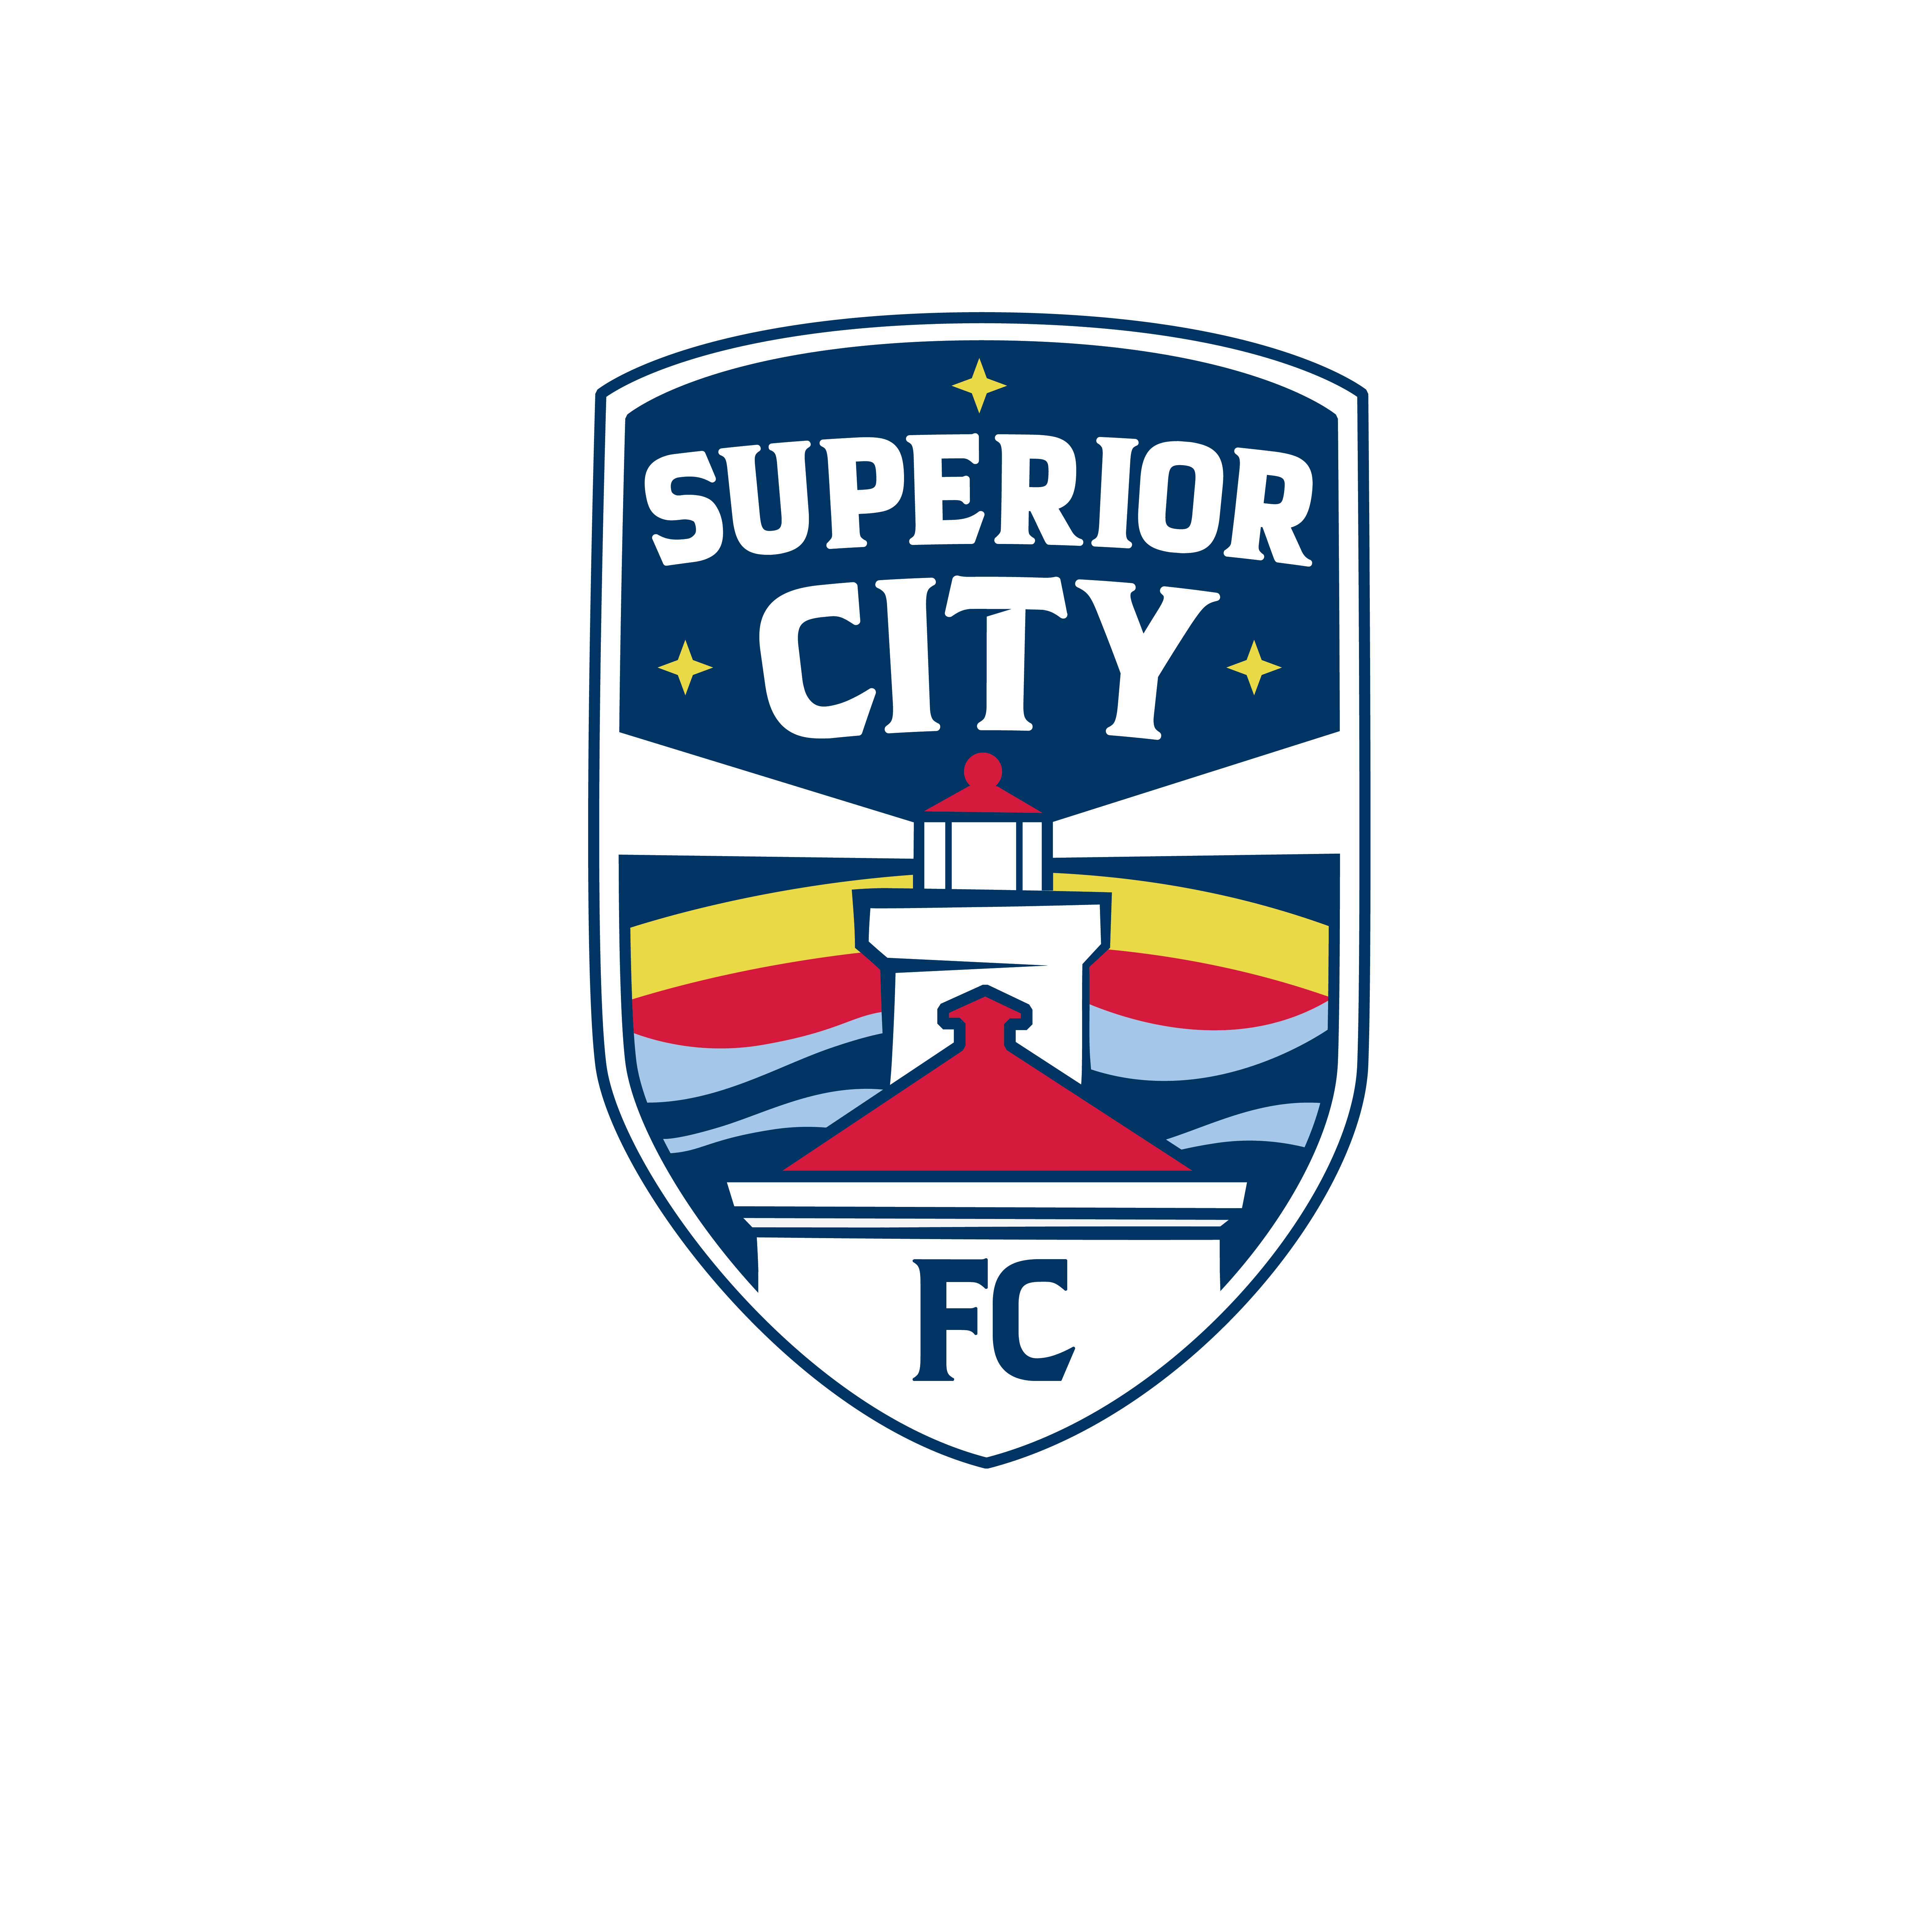 Superior City FC